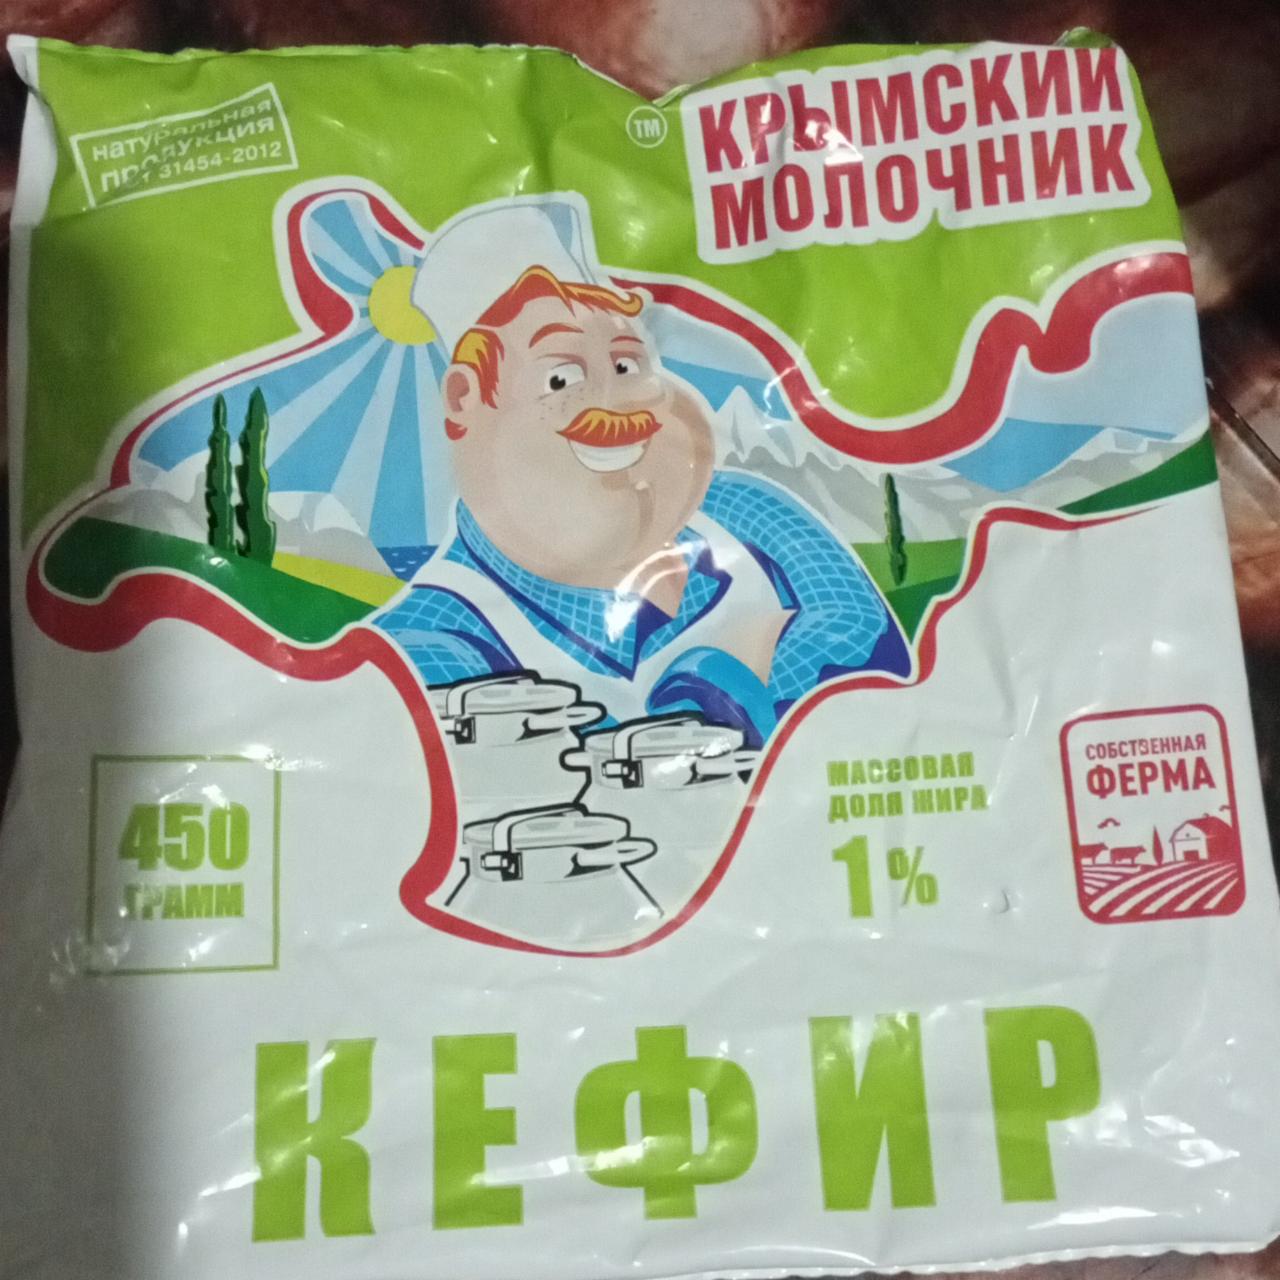 Фото - Кефир 1% Крымский молочник